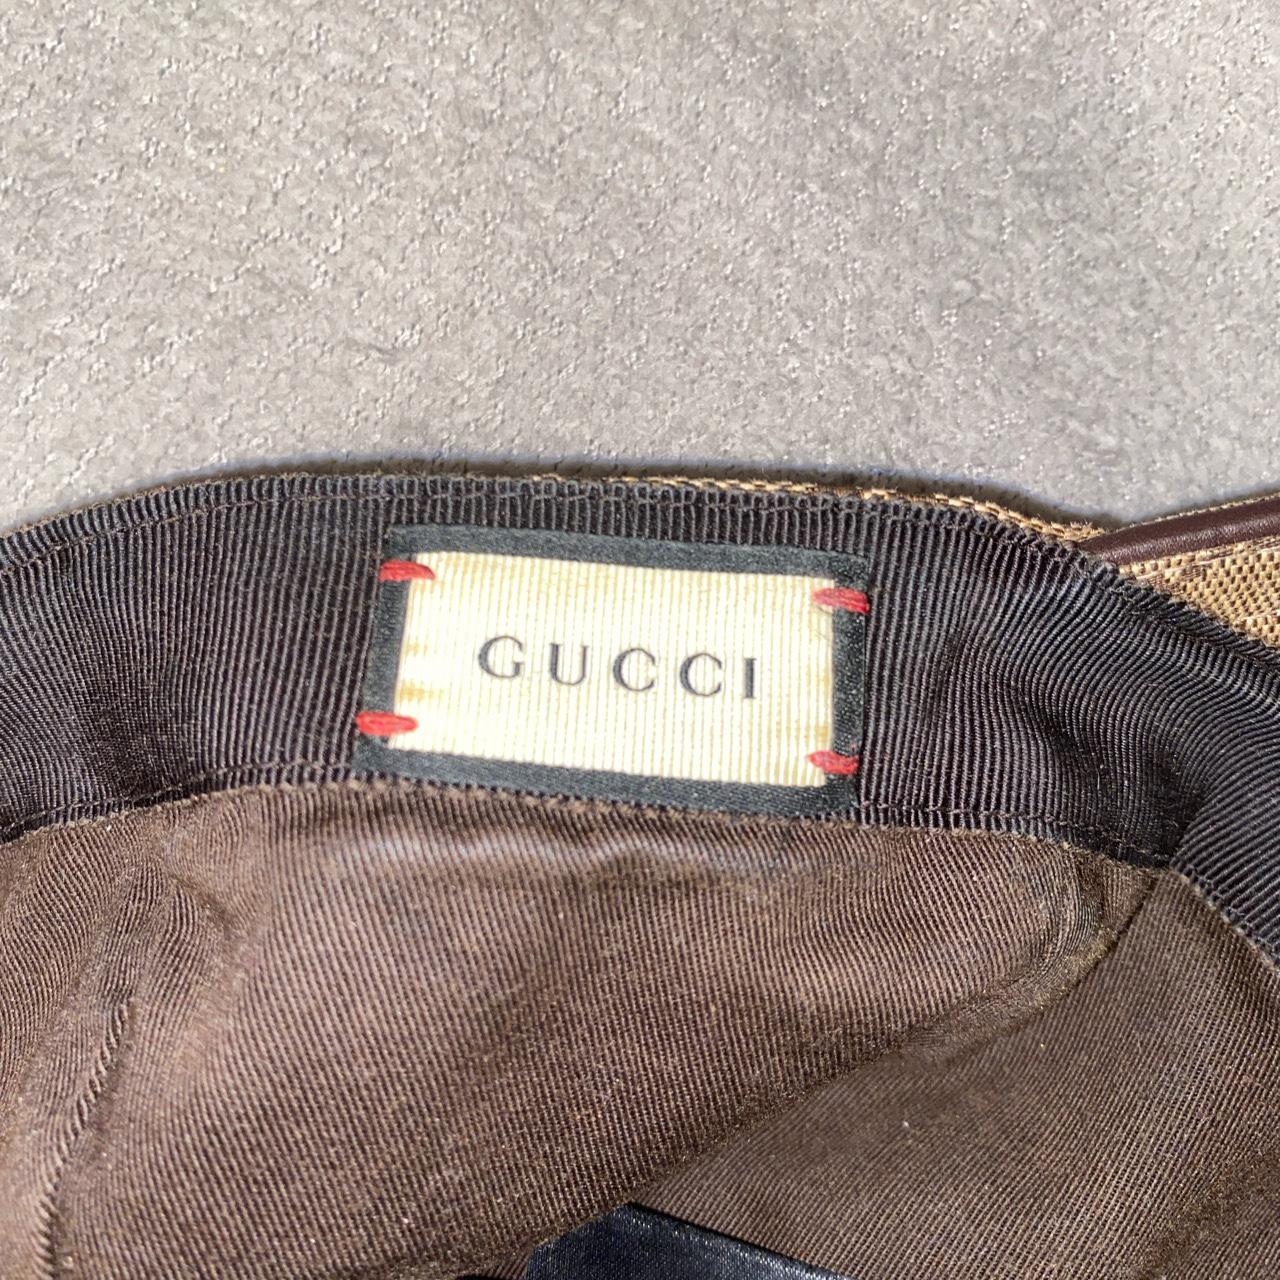 Men’s M Gucci hat. Adjustable strap at the rear.... - Depop